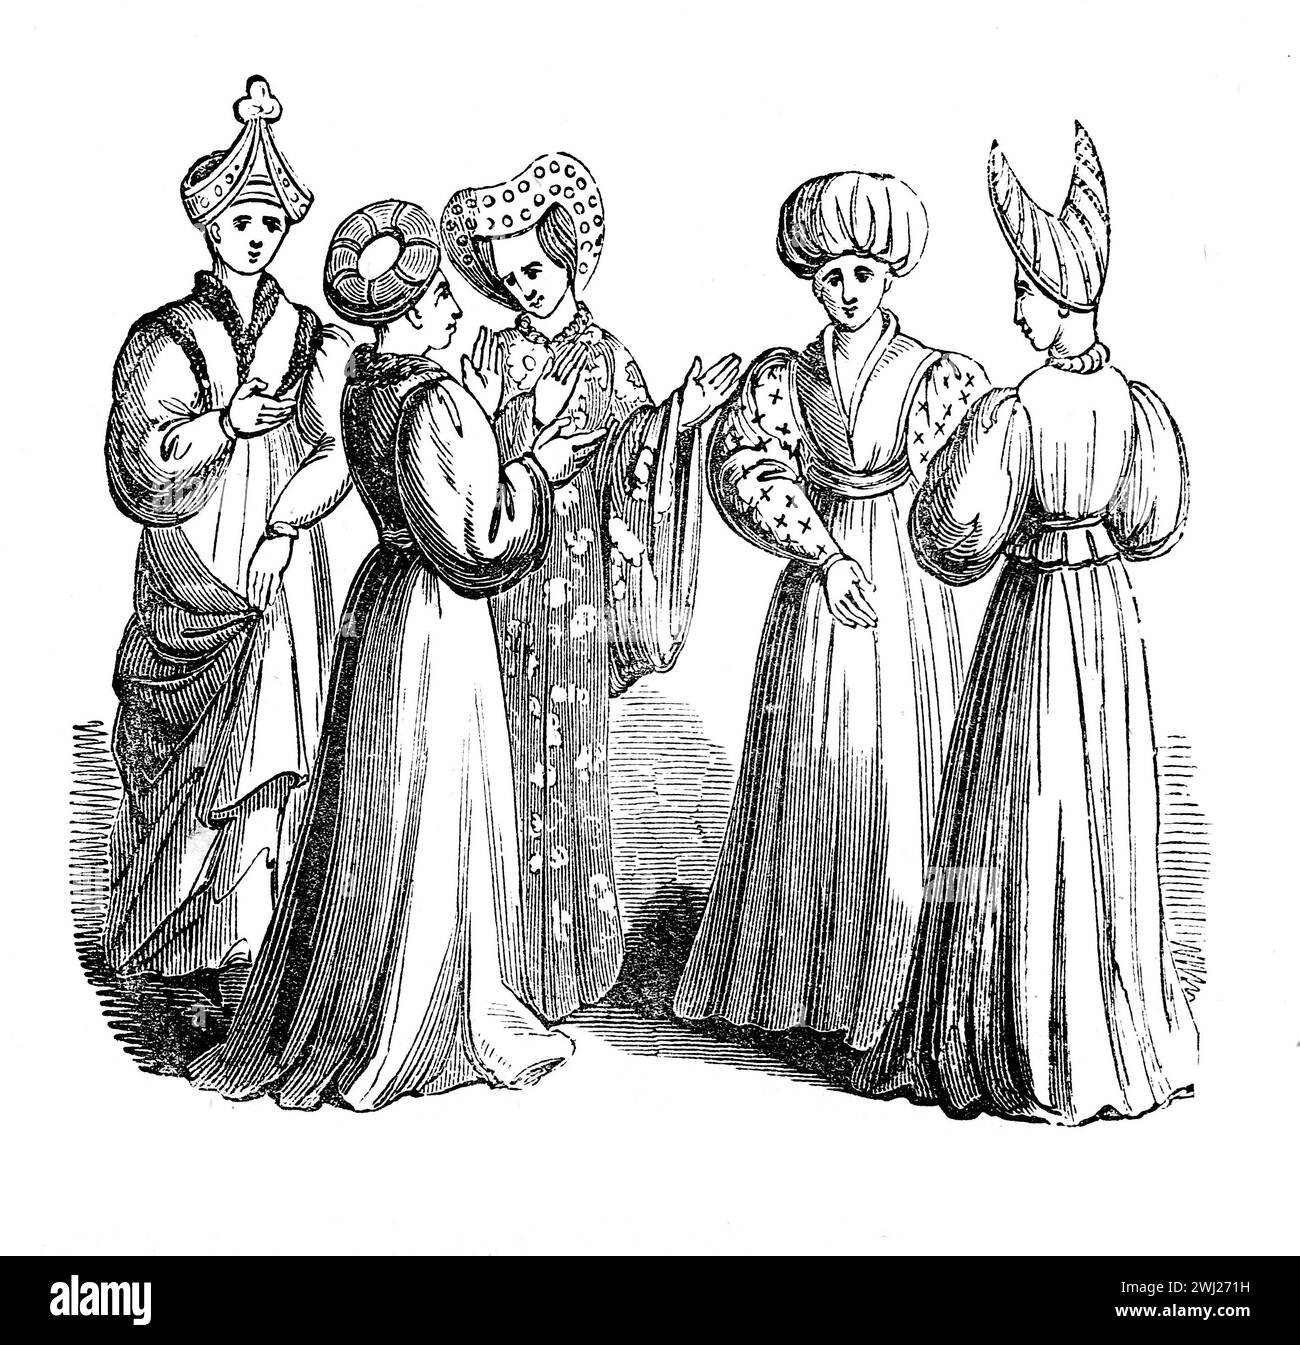 Trajes femeninos en la época de Enrique VI de Inglaterra. Ilustración en blanco y negro de la "vieja Inglaterra" publicada por James Sangster en 1860. Foto de stock